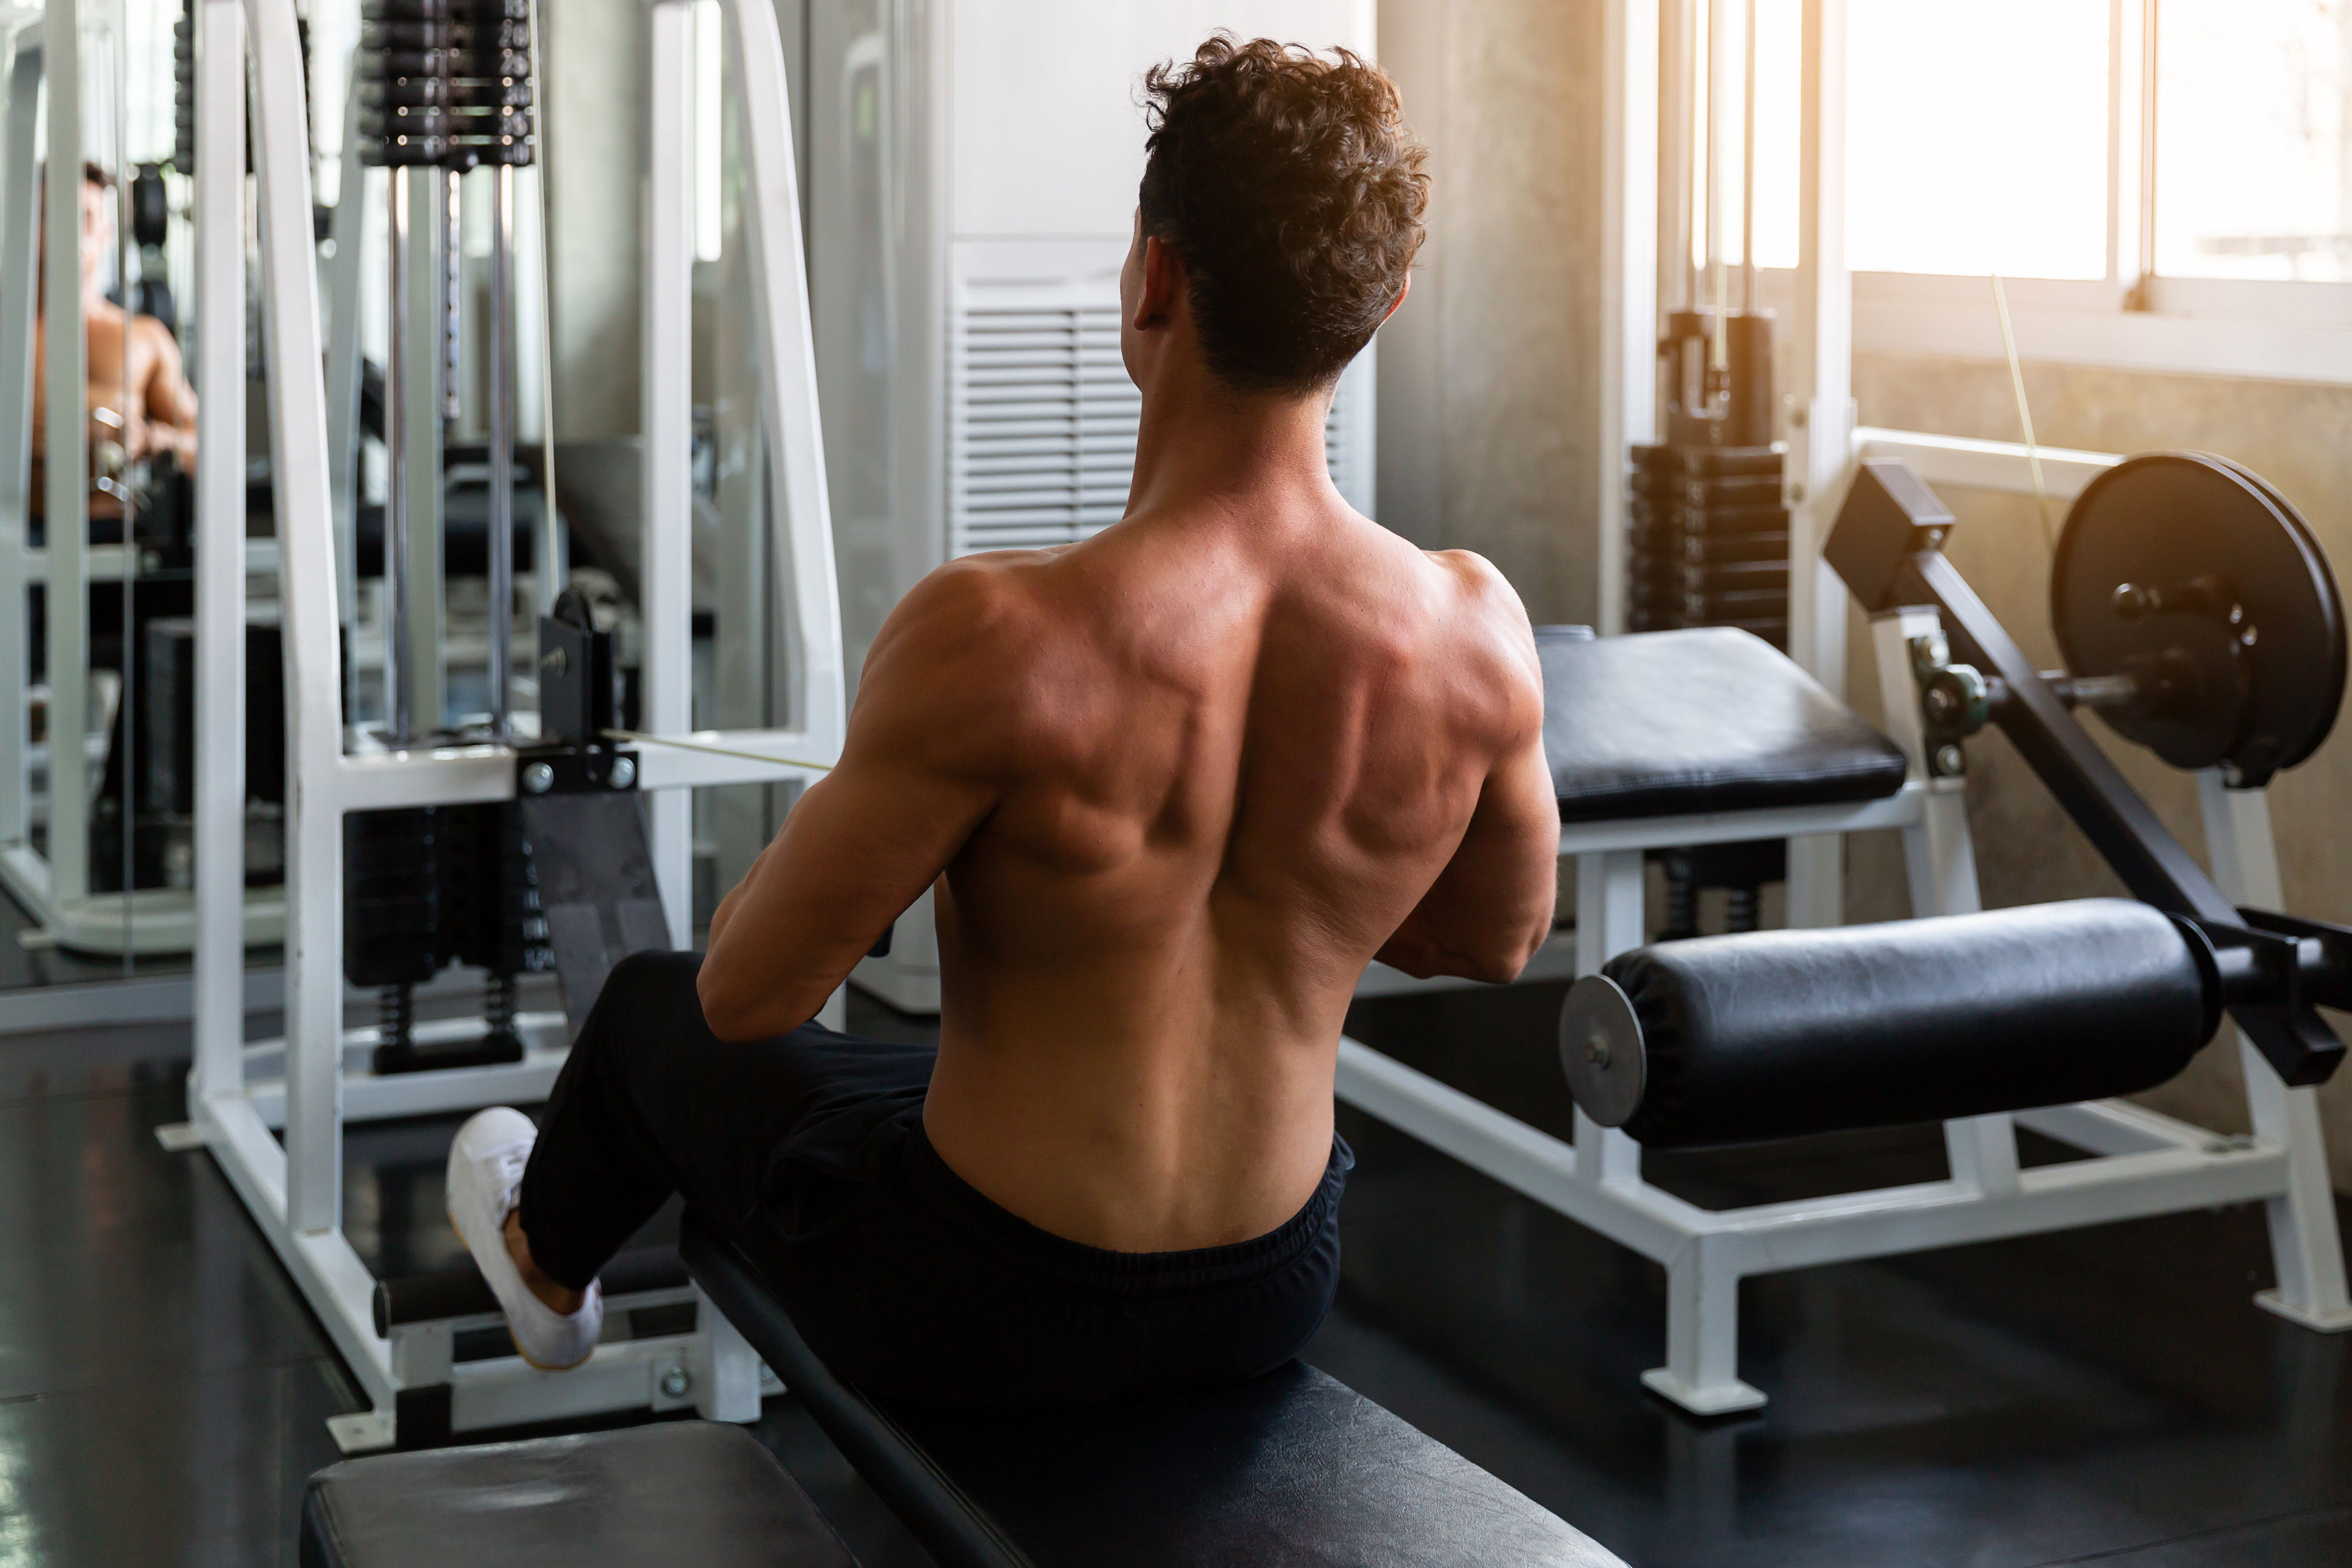 el único ejercicio que necesitas para fortalecer la espalda es también uno de los más sencillos